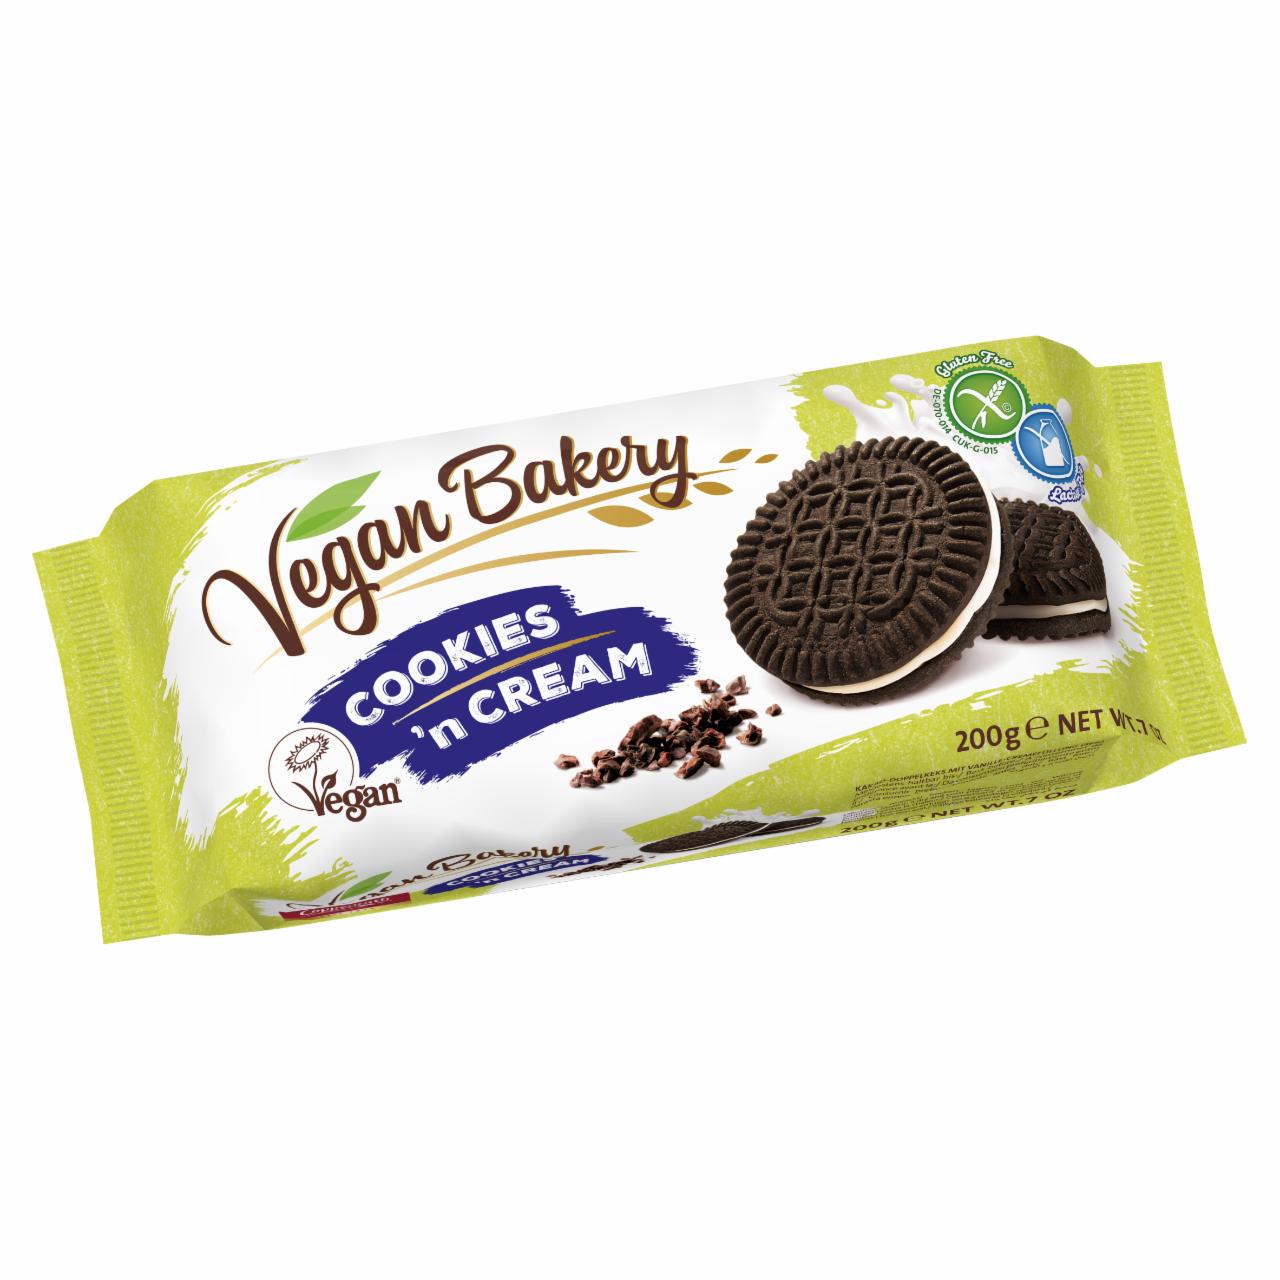 Képek - Coppenrath vegán, gluténmentes, laktózmentes kakaós keksz vaníliás töltelékkel 200 g